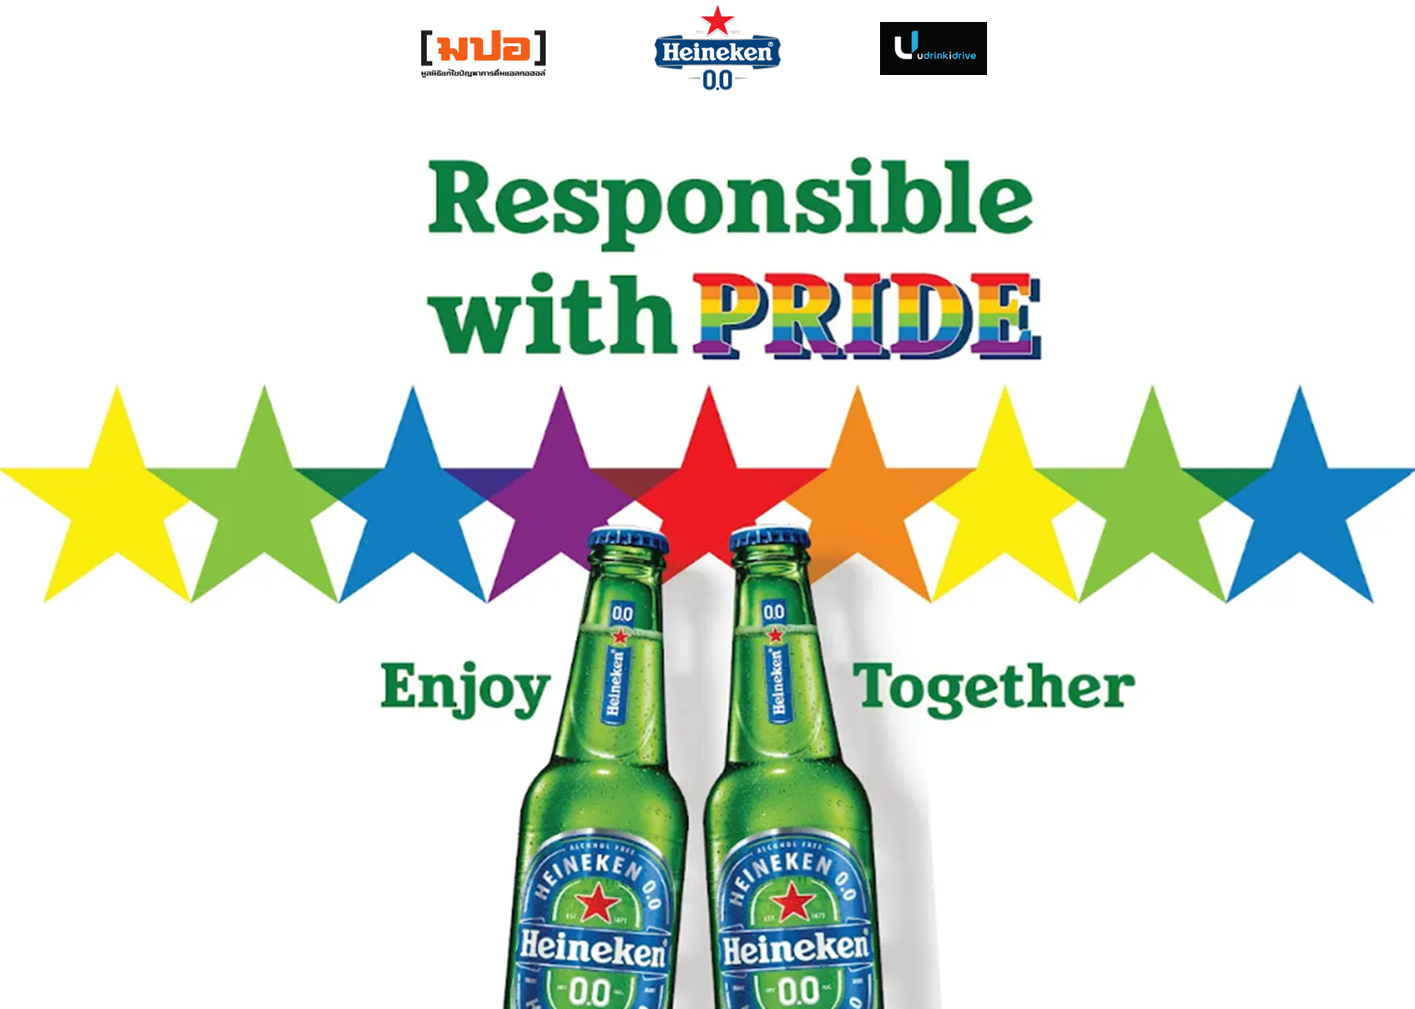 ทัพไบค์เกอร์ Heineken 0.0 ร่วมขบวนสุดยิ่งใหญ่ Love Pride Paradeในคอนเซปต์ “Responsible with Pride” ร่วมสื่อสารความรับผิดชอบผ่านความหลากหลายบนท้องถนน